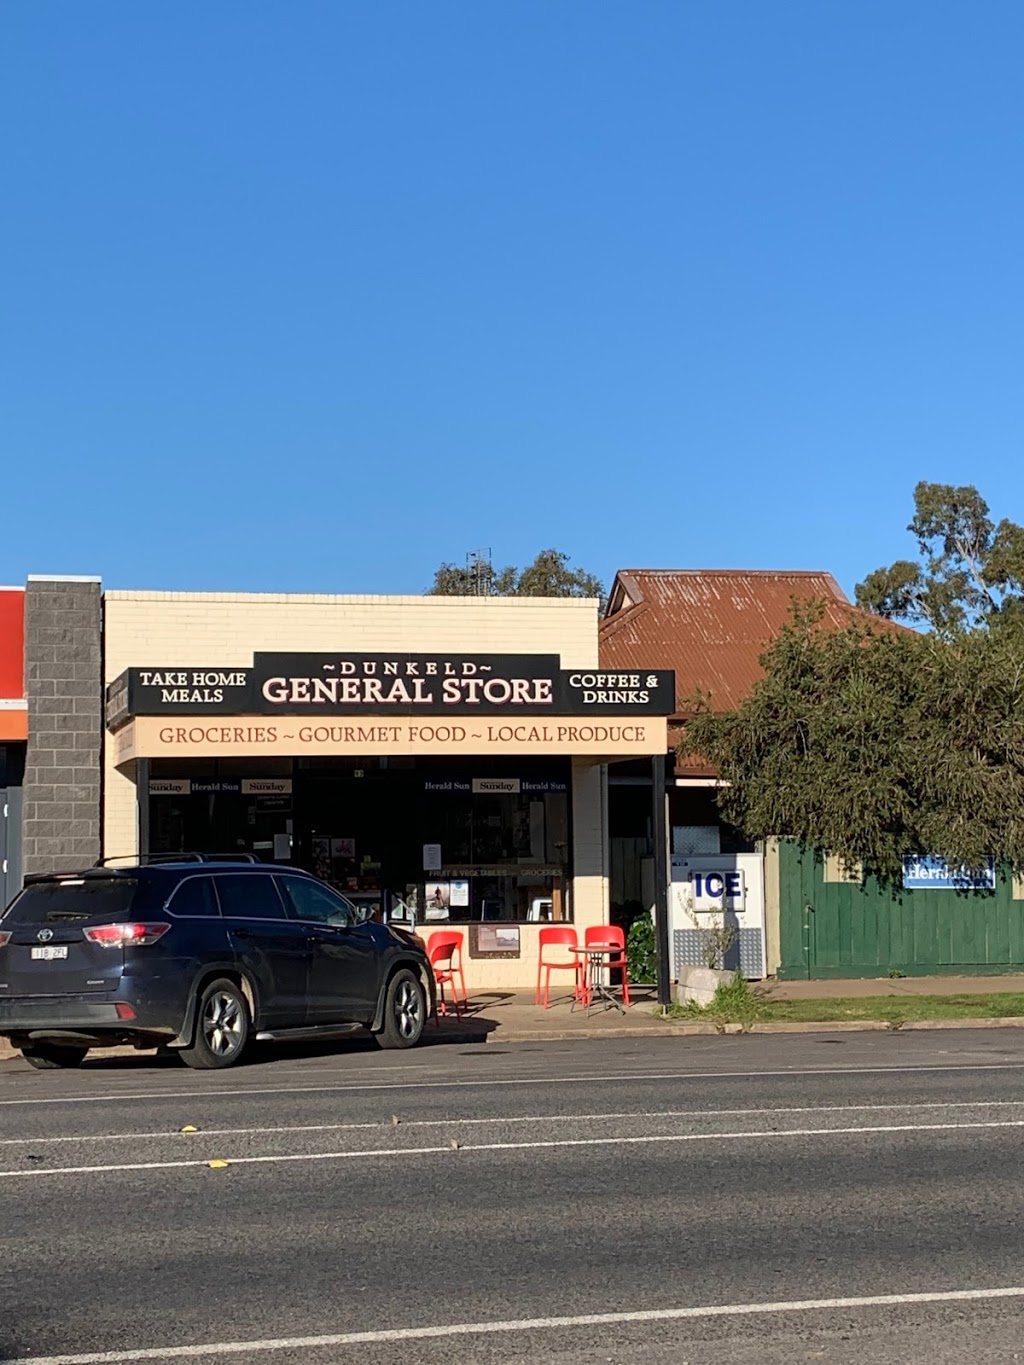 Dunkeld General Store | cafe | 93 Parker St, Dunkeld VIC 3294, Australia | 0355772418 OR +61 3 5577 2418